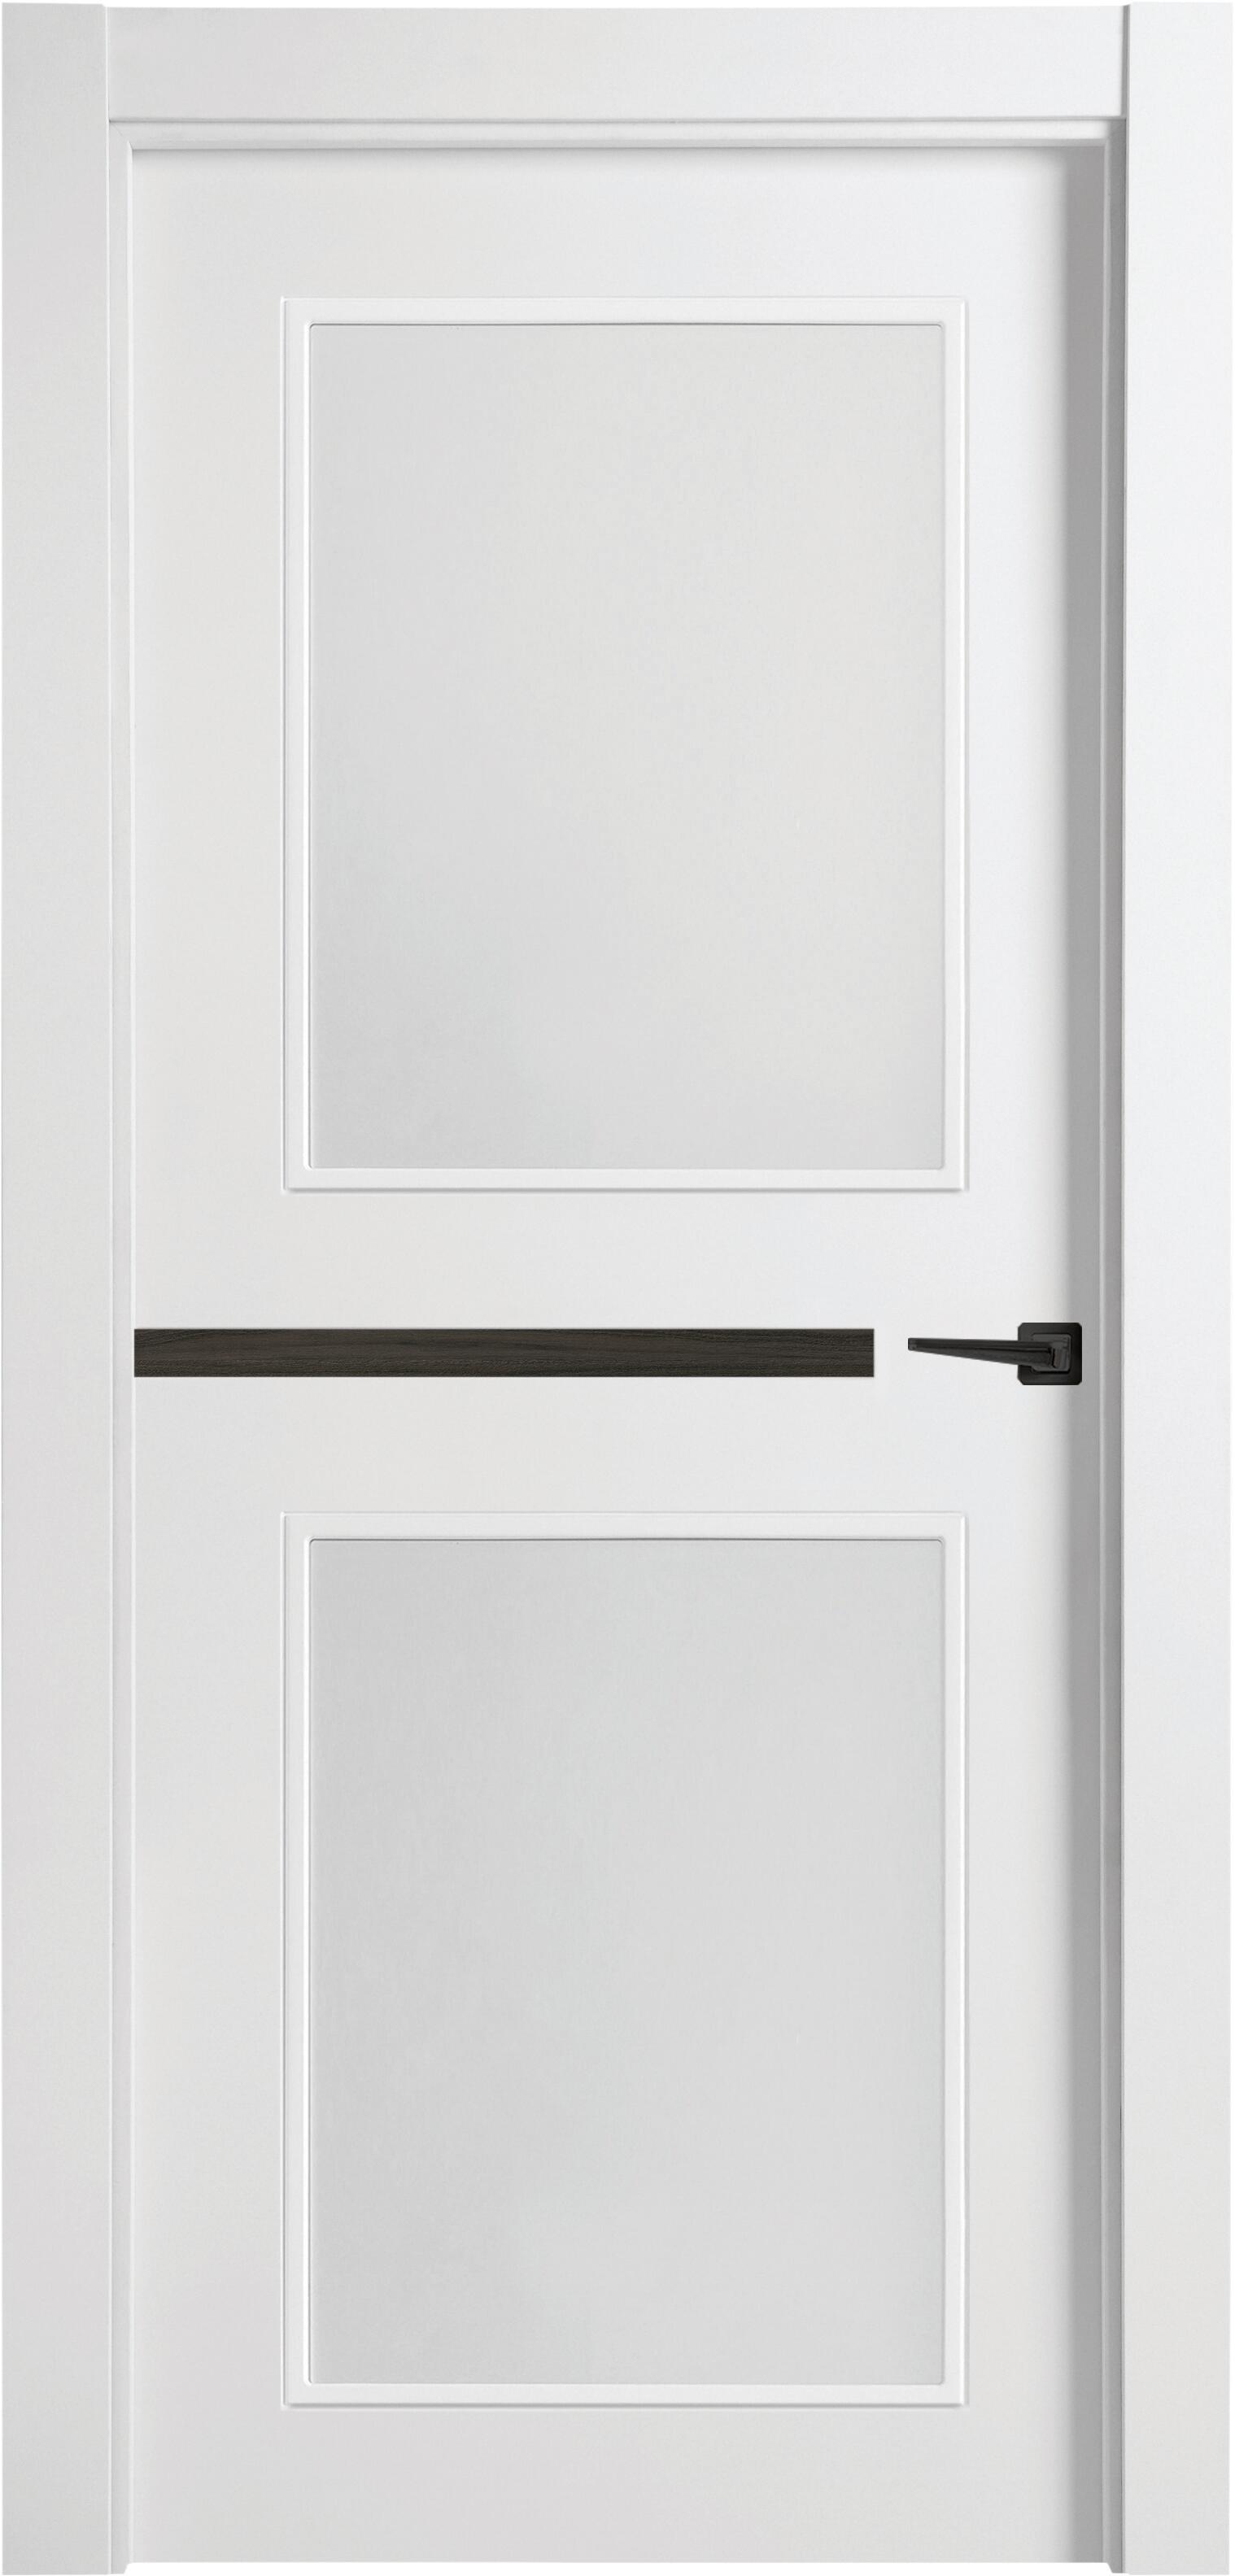 Puerta denver carbón blanco apertura izquierda con cristal de 9x92,5 cm